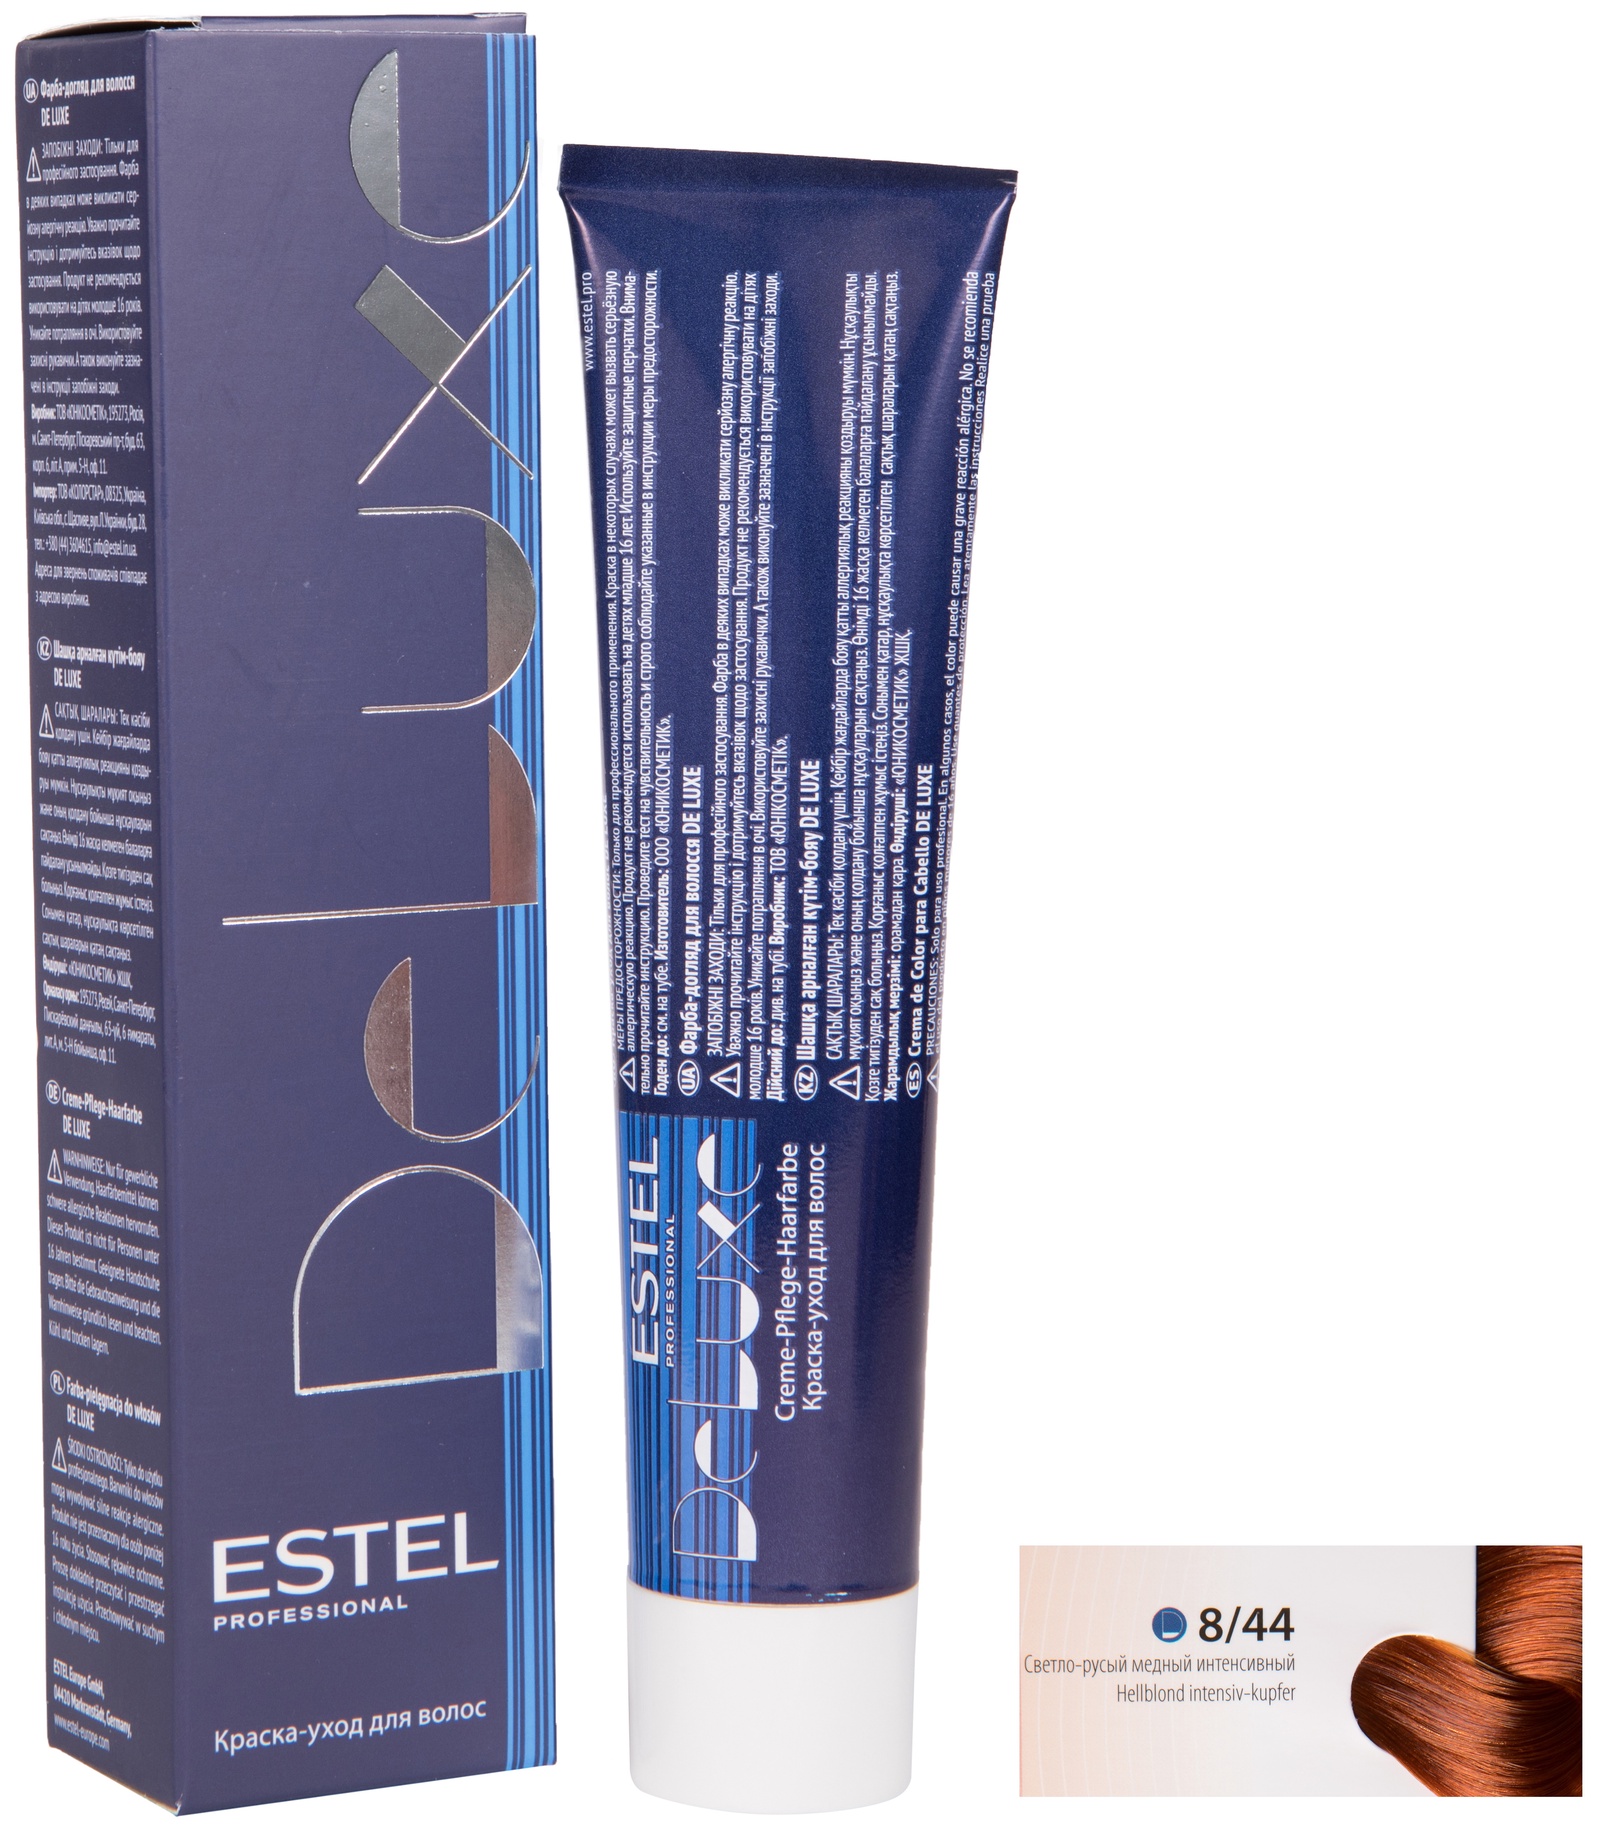 Краска для волос ESTEL PROFESSIONAL 8/44 DE LUXE краска-уход для окрашивания волос, светло-русый медный интенсивный 60 мл